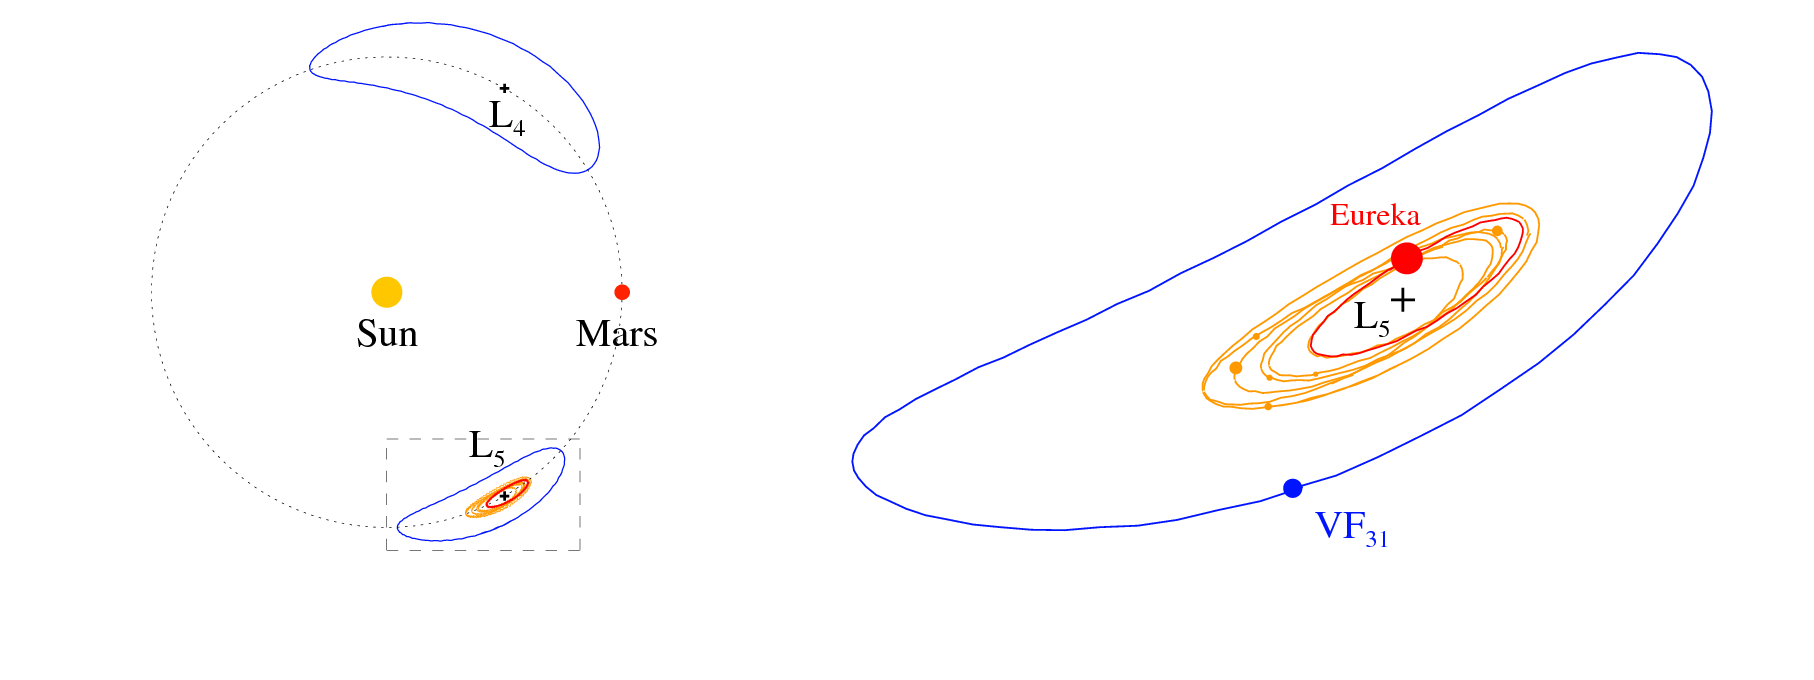 À esquerda, os percursos traçados pelos troianos de Marte em relação ao planeta e ao Sol. À direita, ampliação da inserção (retângulo) que mostra os percursos dos 8 troianos em L5: 1998 VF31 (a azul), Eureka (vermelho), e os 6 objetos identificados como membros da família.